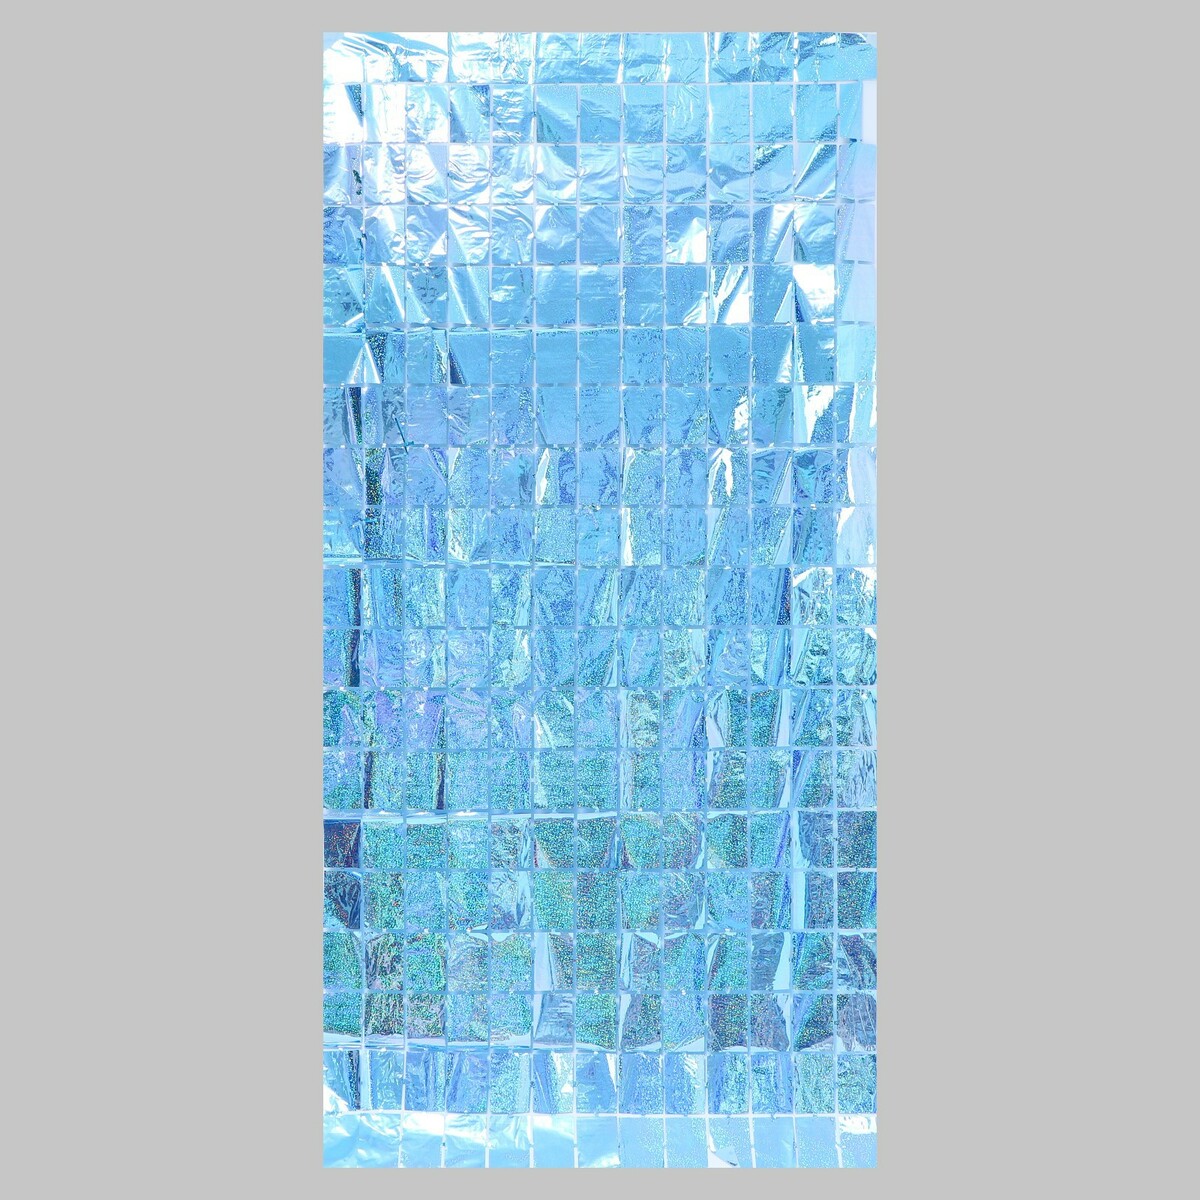 Праздничный занавес голография, 100 × 200 см., цвет голубой